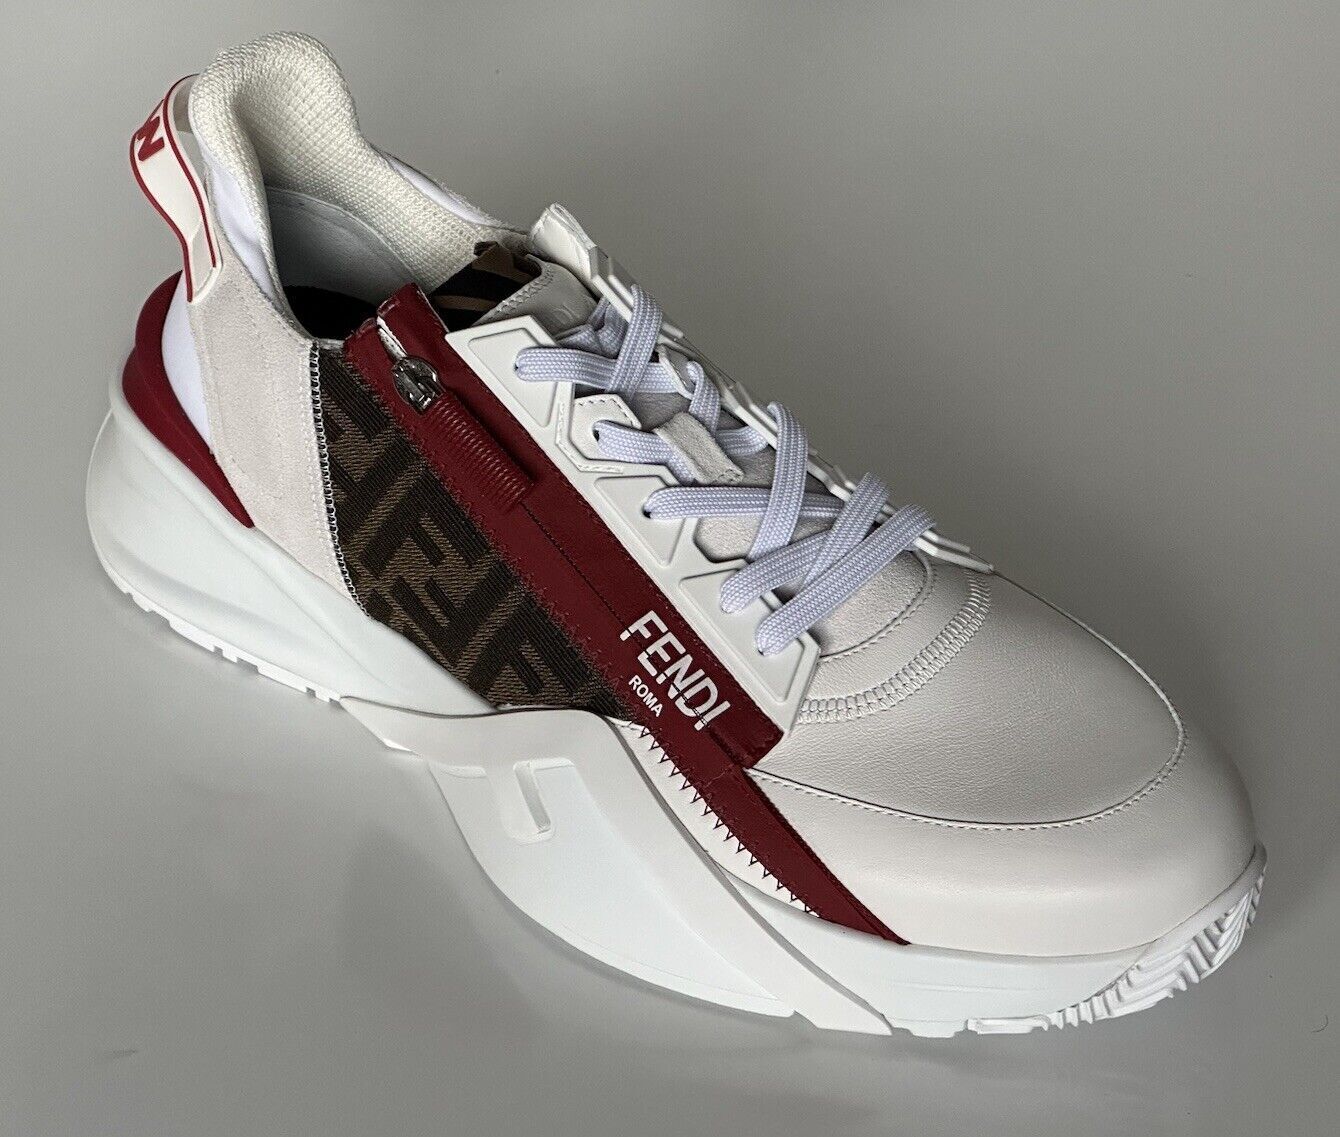 NIB $995 Fendi Flow Men's Leather Sneakers White 8 US (7 Euro) 7E1392 Italy